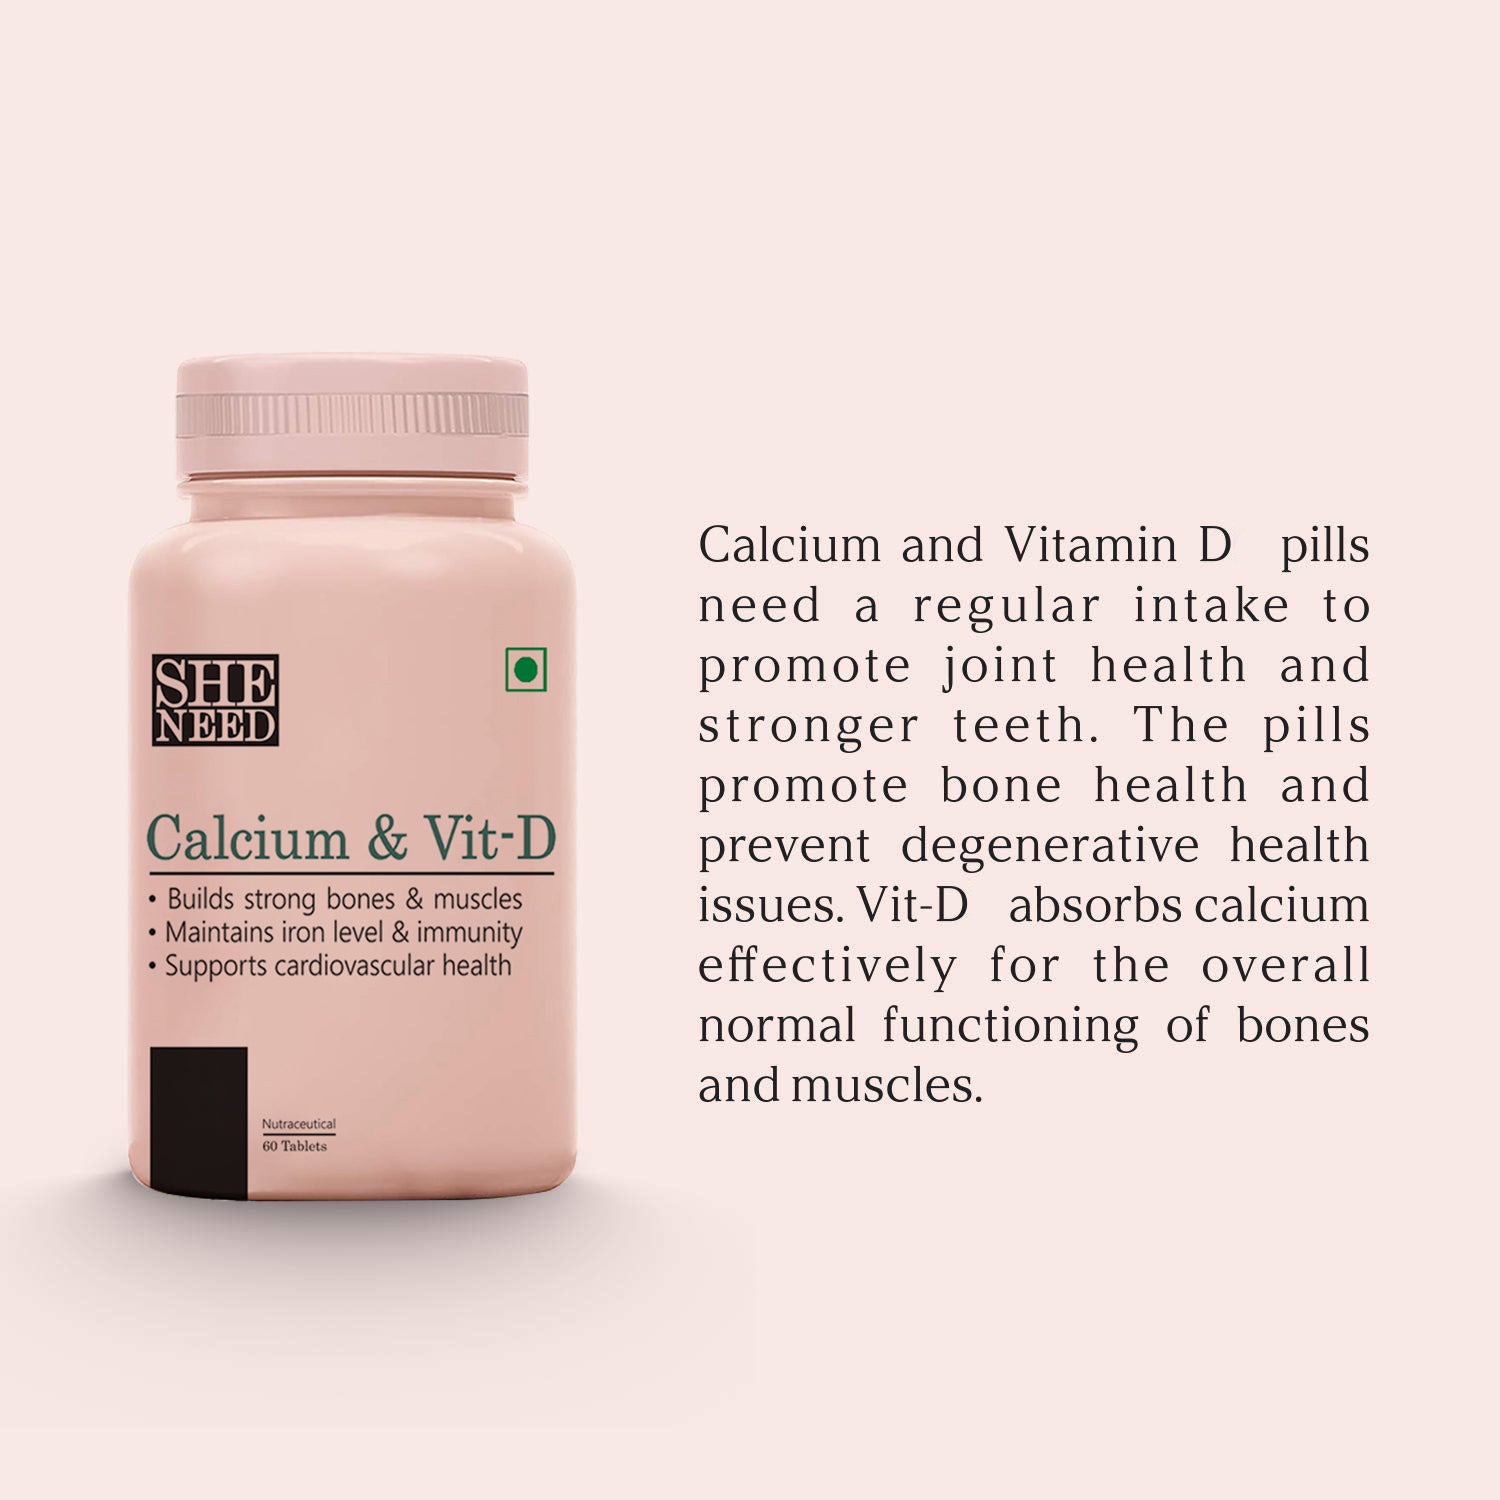 Vanity Wagon | Buy SheNeed Calcium & Vit-D Supplement